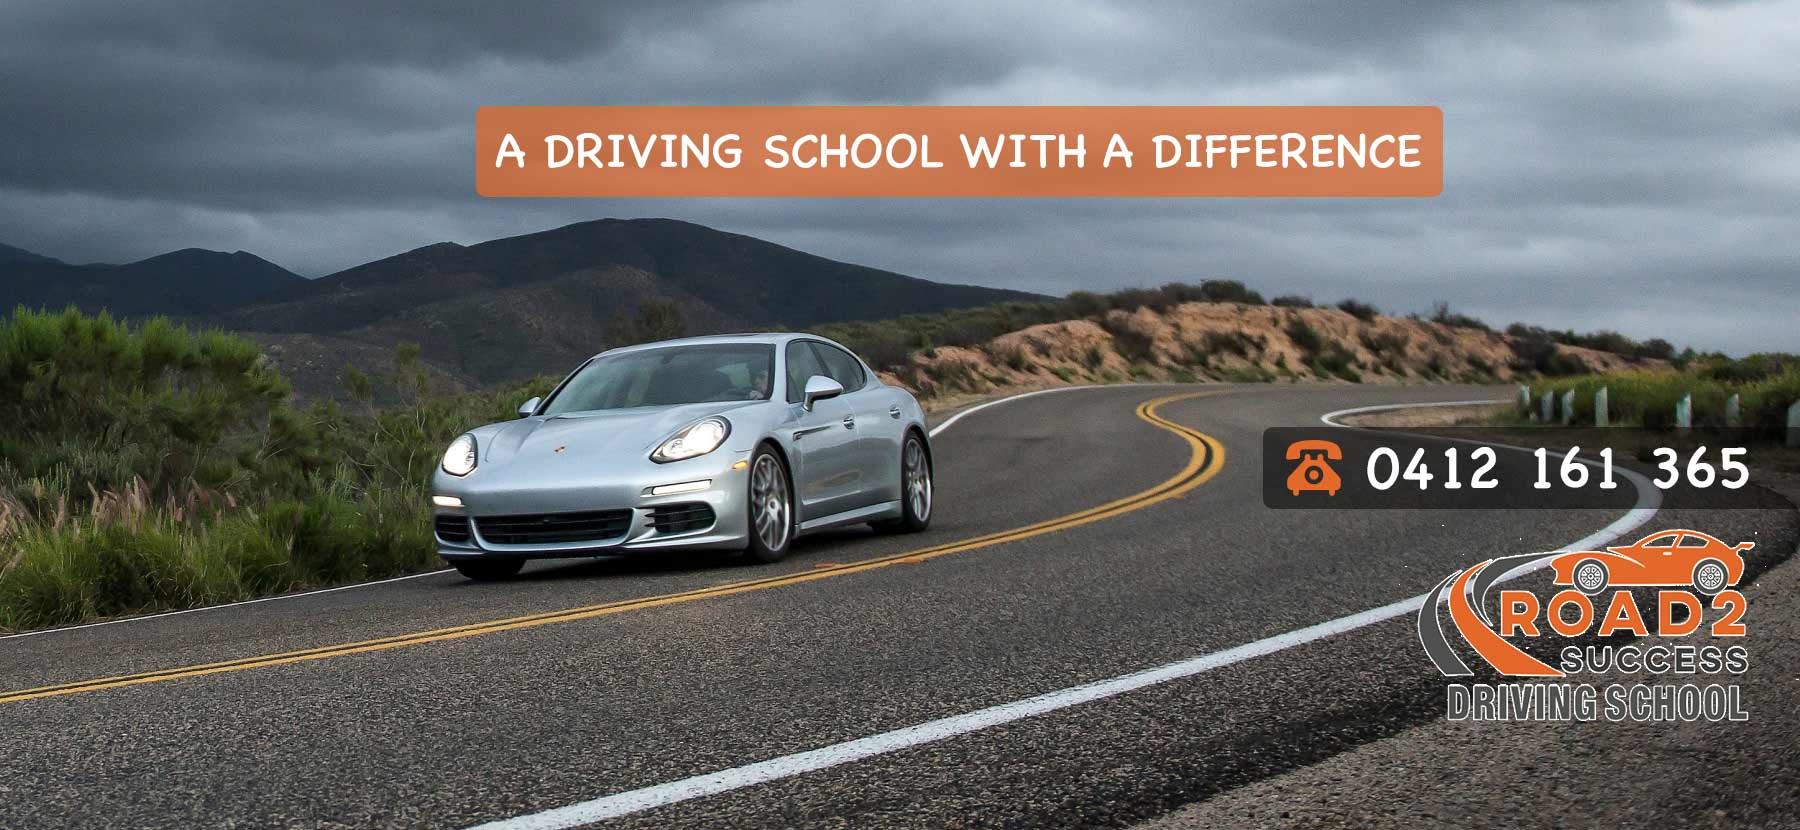 road2success driving school